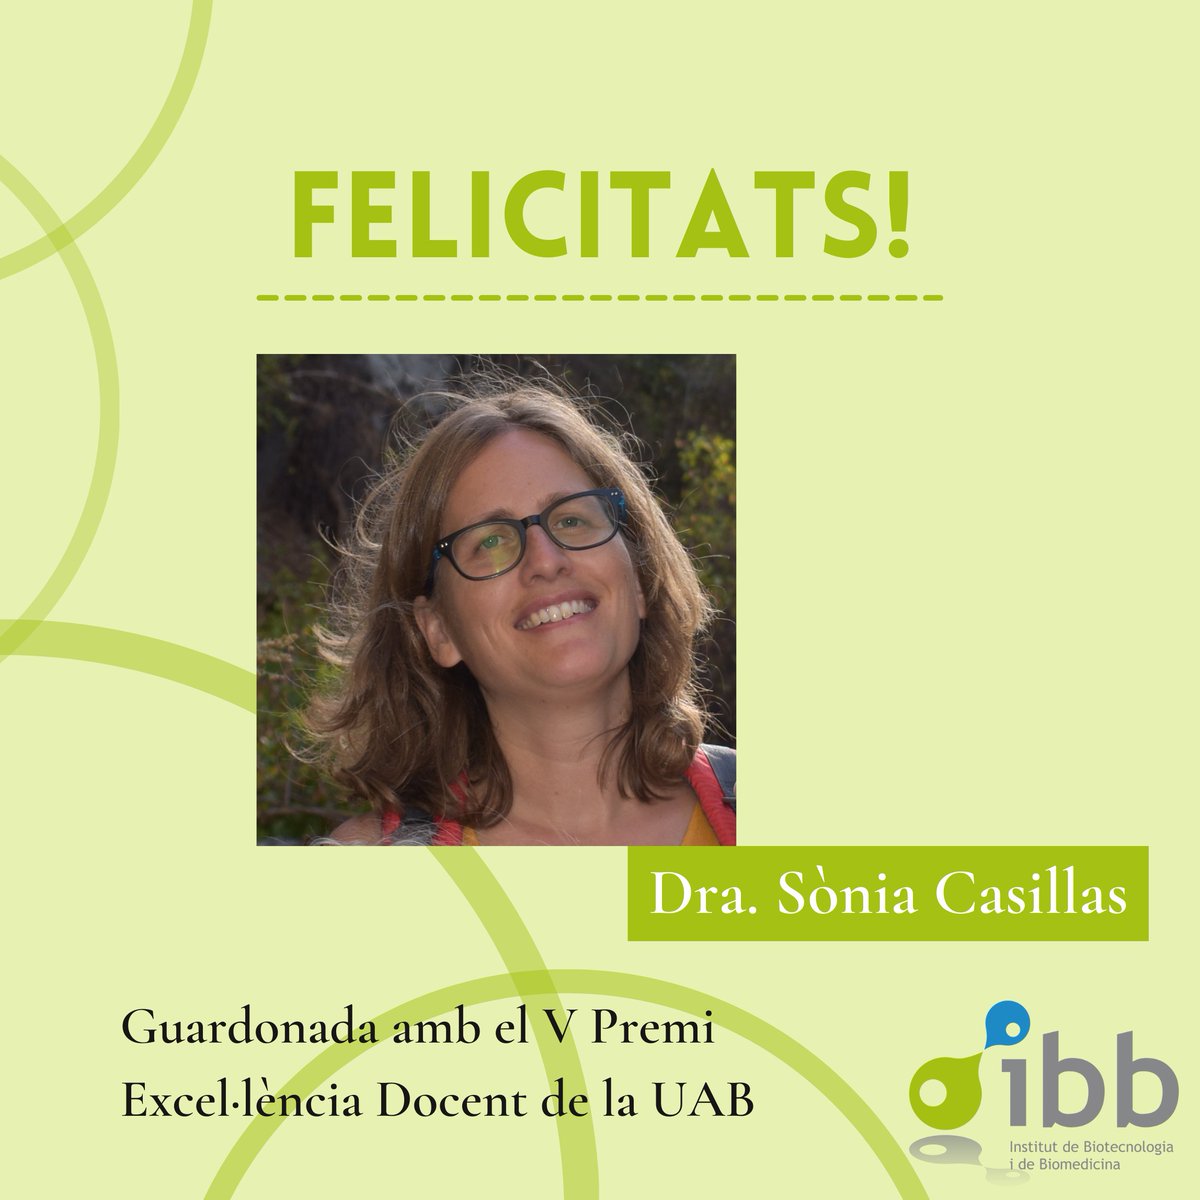 La Sònia Casillas, investigadora de l'IBB i professora agregada al Departament de Genètica i de Microbiologia de @Biociencies_UAB, ha rebut el V Premi Excel·lència Docent de la UAB. 

👏 Enhorabona!!

Més info aquí: ibb.uab.cat/index.php/2023…

#premisIBB
@scasillasv 
@UABBarcelona